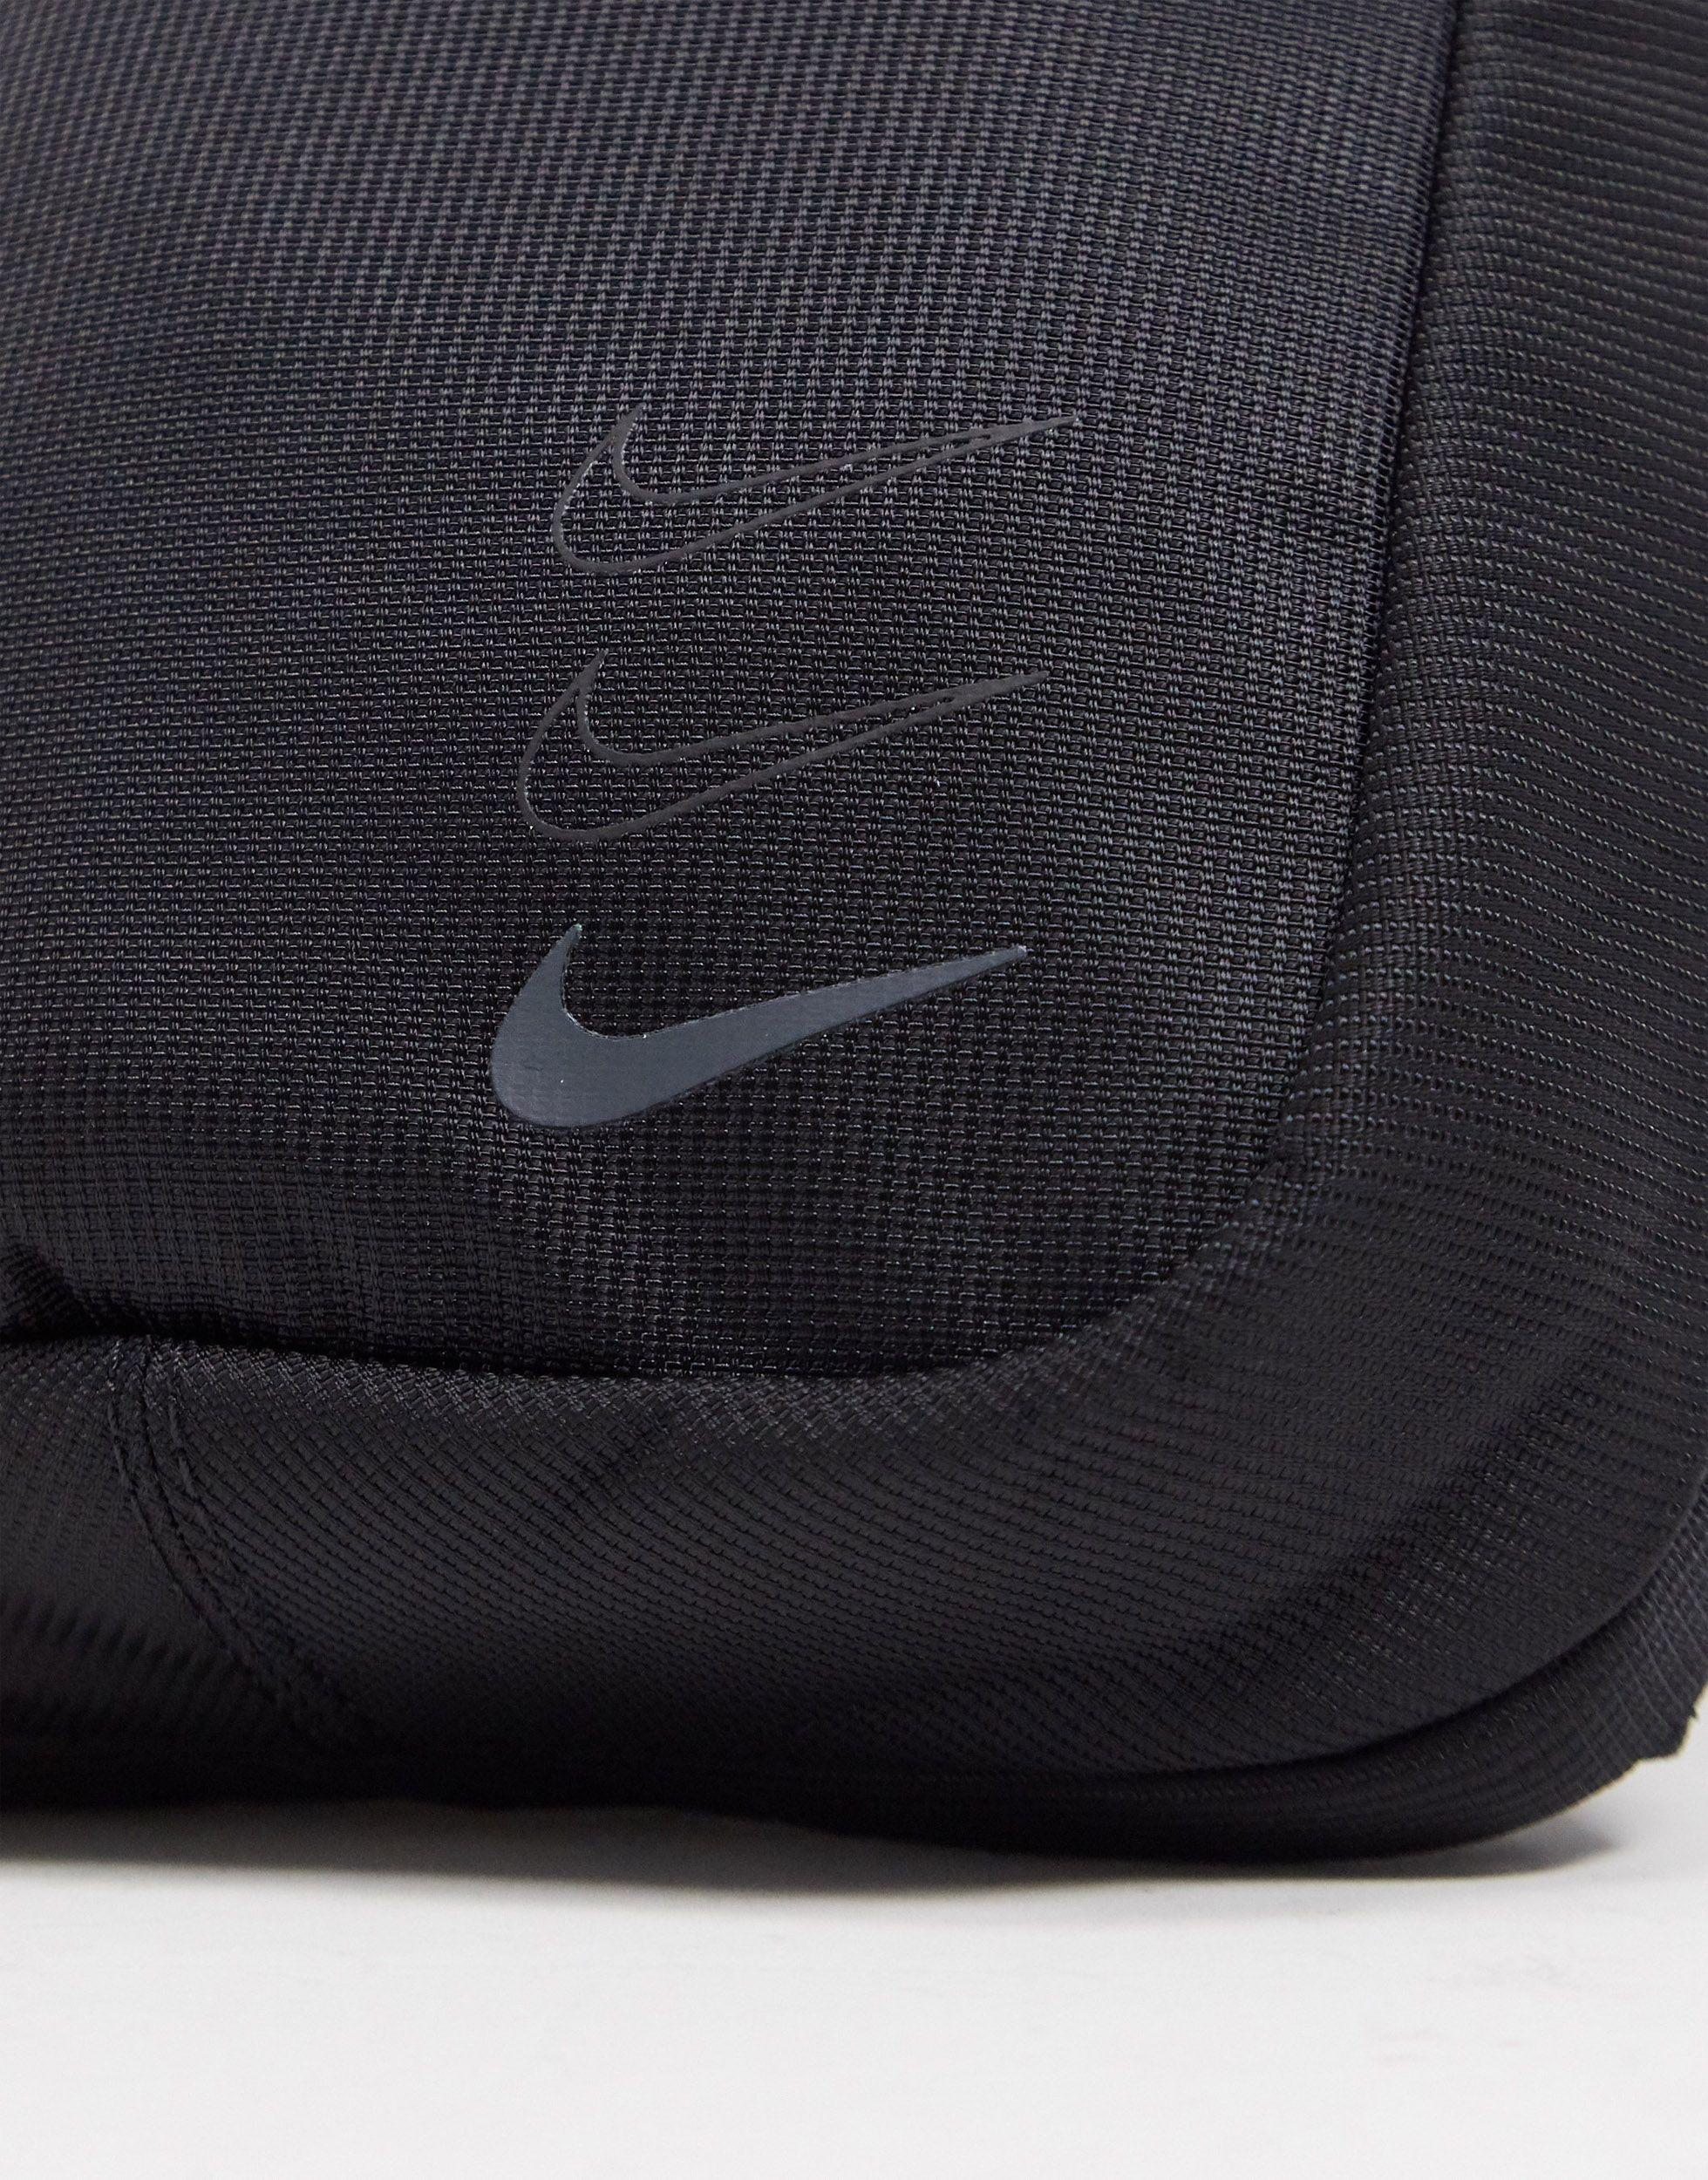 Nike Advance Crossbody Bag in Black for Men